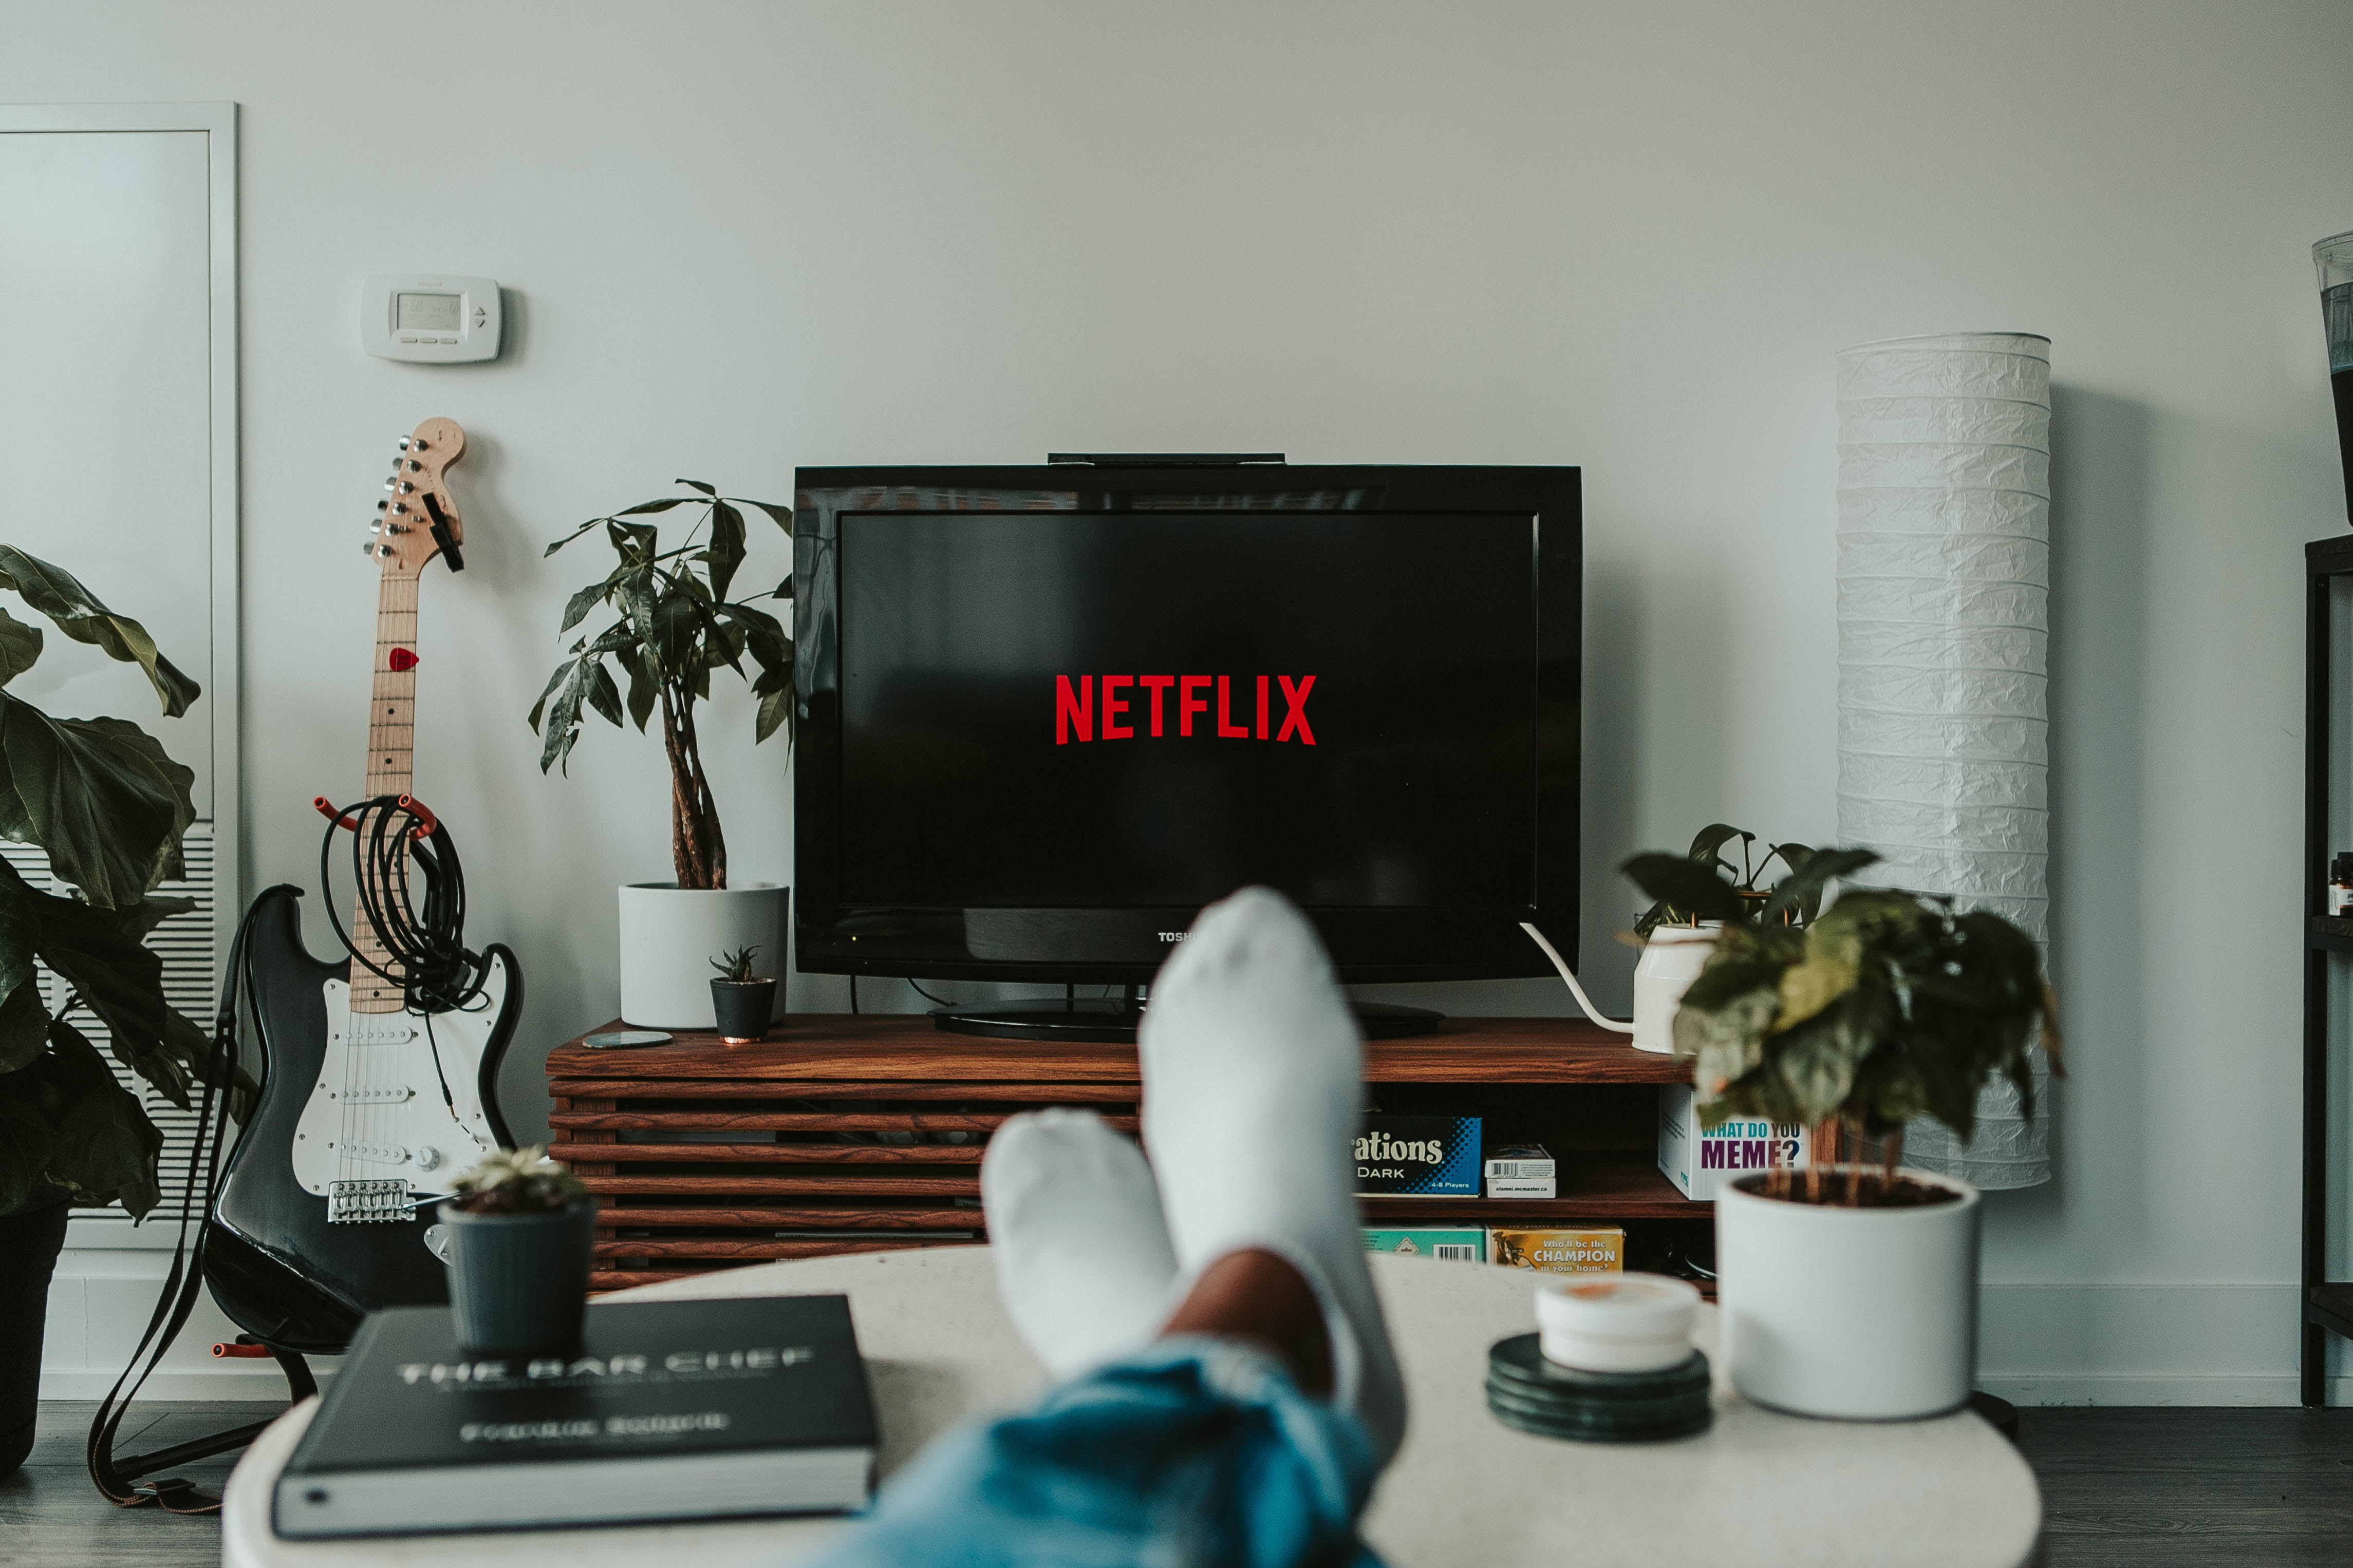 Vivo Fibra vai levar mais entretenimento para os consumidores com  assinatura Netflix inclusa - ABC da Comunicação